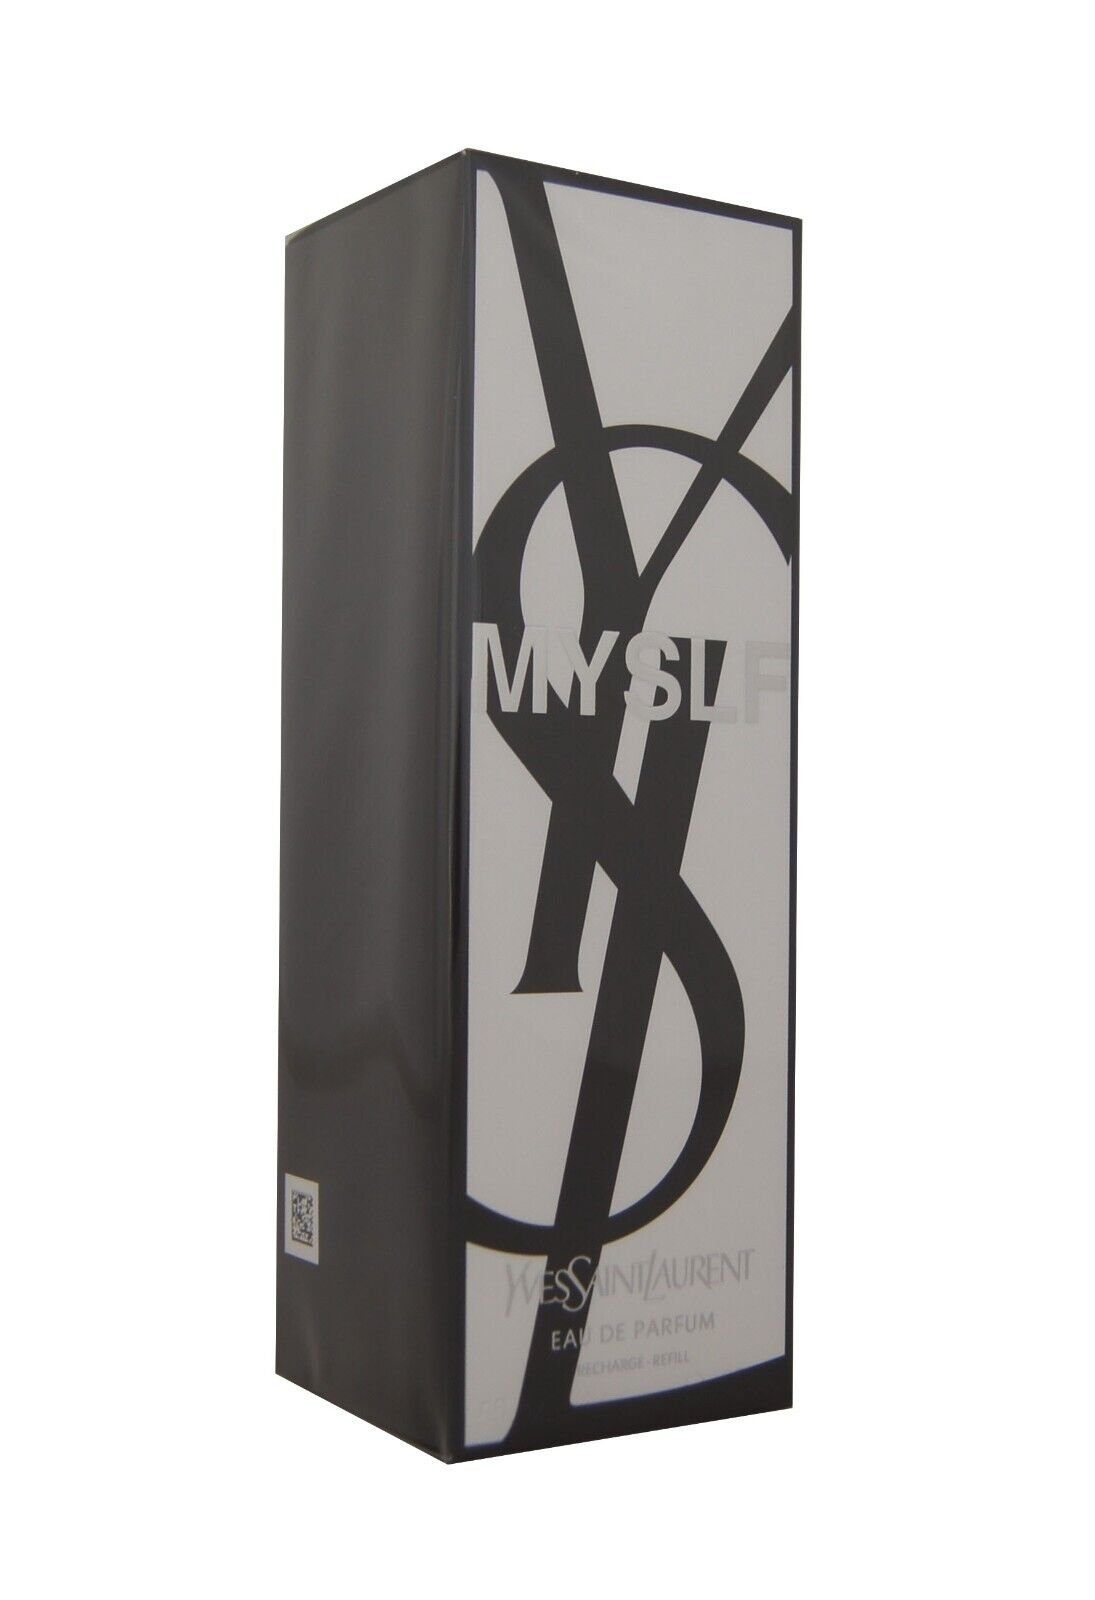 YVES SAINT LAURENT Eau de Parfum Yves Saint Laurent Myslf Eau de Parfum edp Refill For Men 150ml.